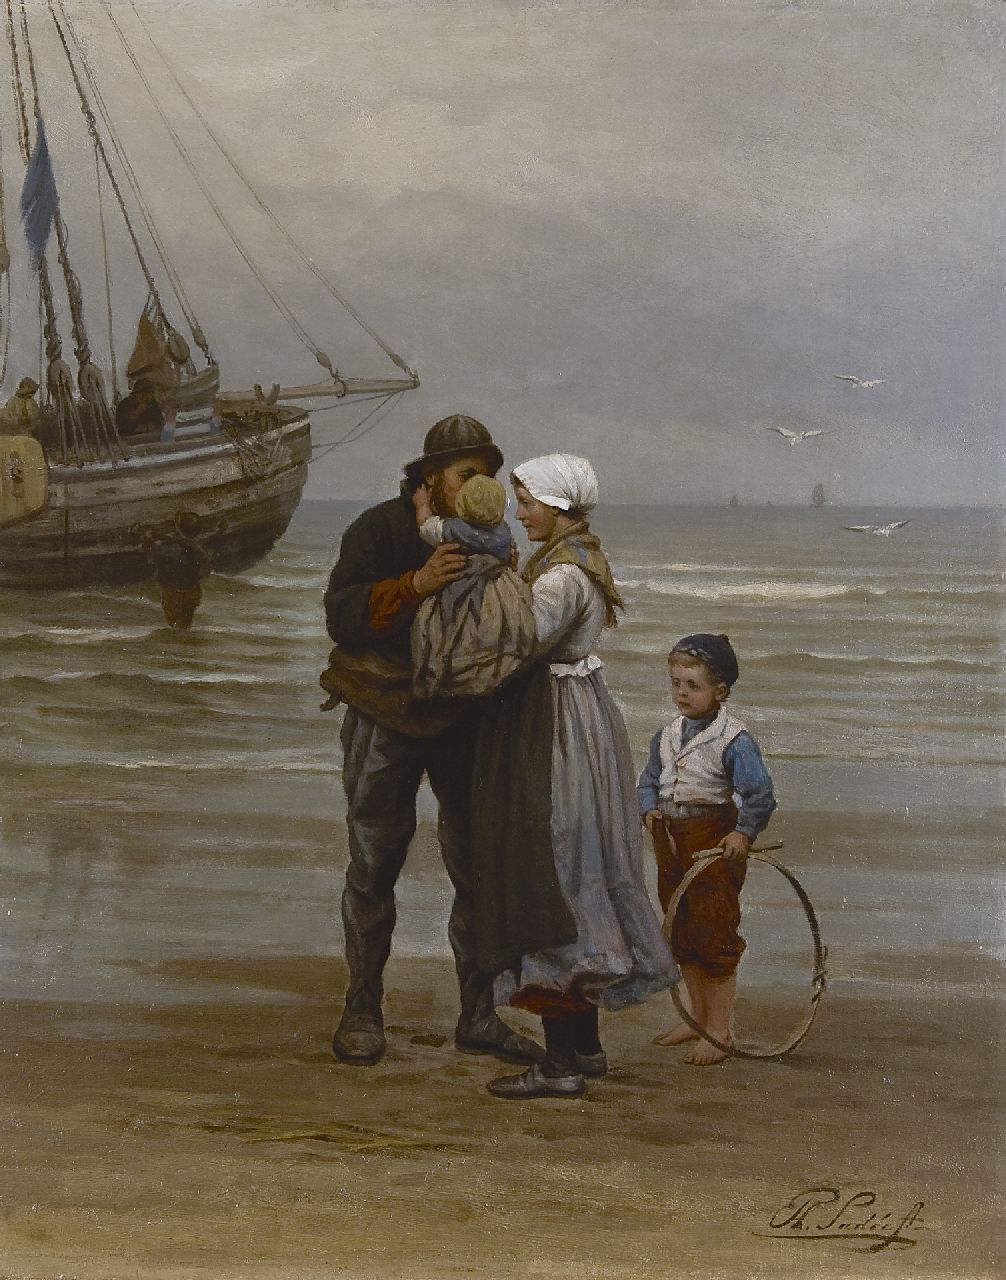 Sadée P.L.J.F.  | Philip Lodewijk Jacob Frederik Sadée, Teder afscheid, olieverf op doek 70,0 x 56,0 cm, gesigneerd rechtsonder